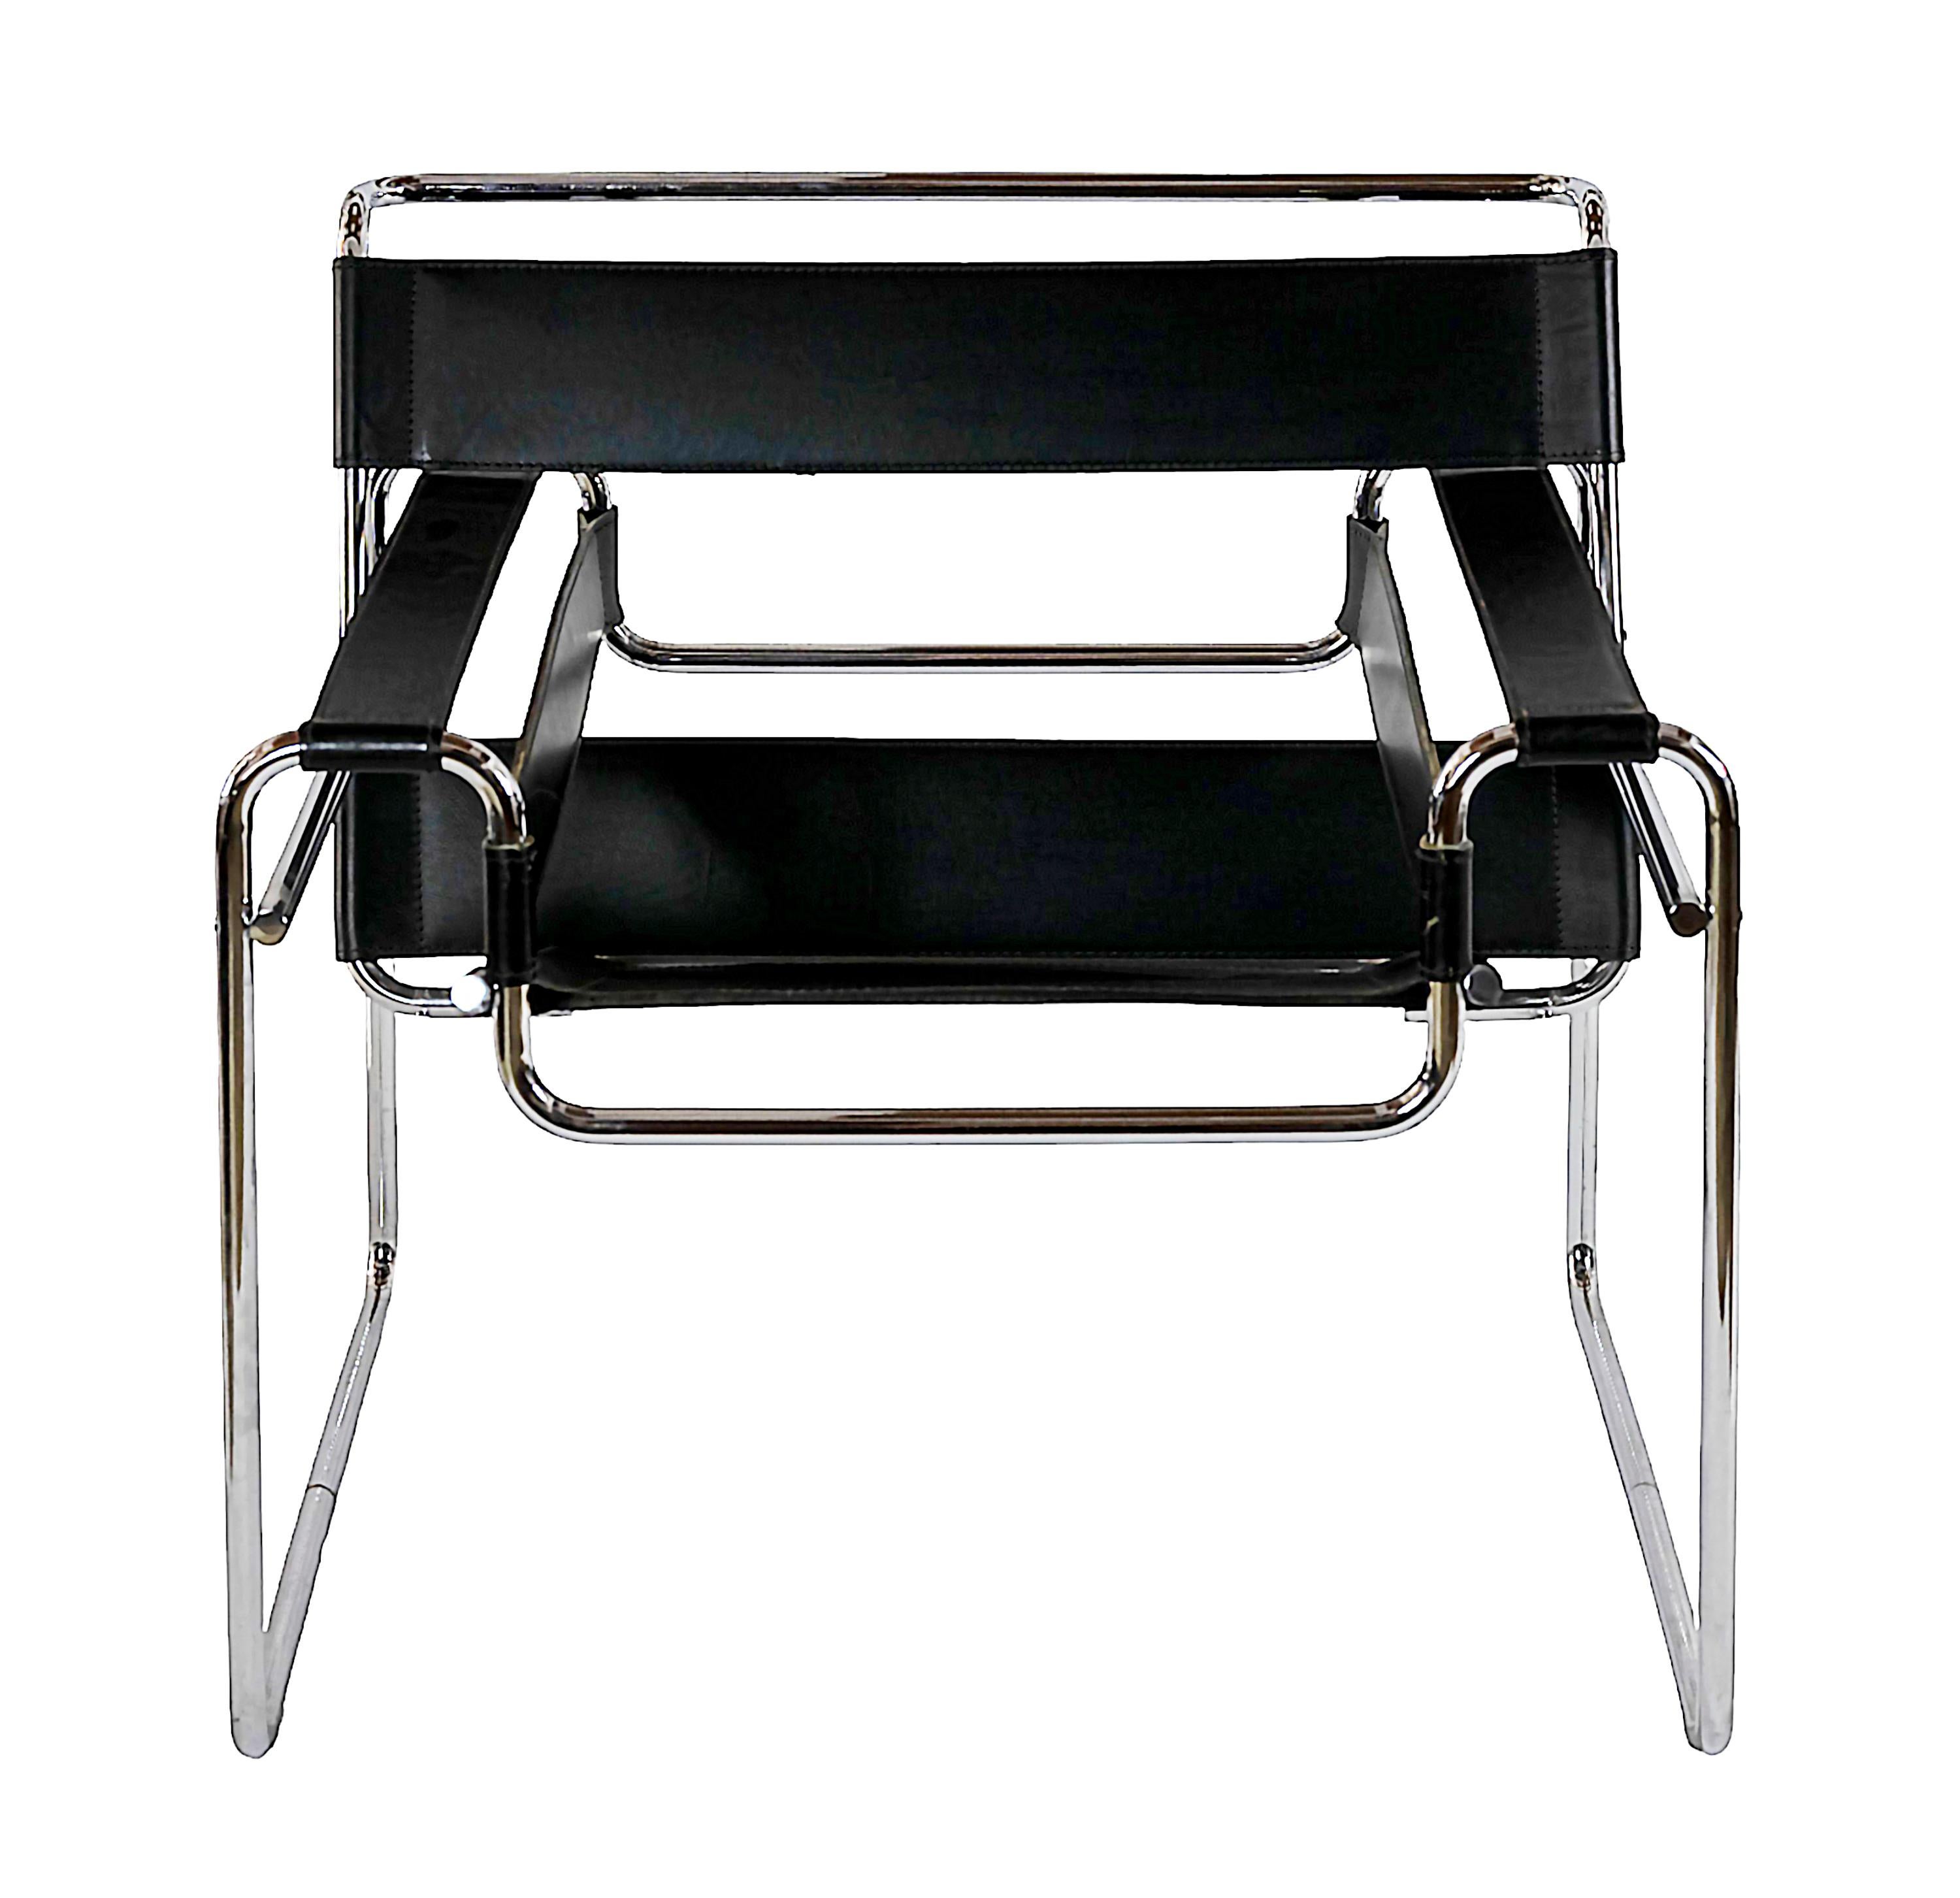 Vintage Wassily Lounge Chair, entworfen von Marcel Breuer, um 1925.
Herstellungsdatum 2003 von Knoll Studio.
Knoll Studio auf dem Rahmen gestempelt und mit einem Label versehen.
Aus schwarzem Leder, Gestell aus verchromtem Stahlrohr.
Guter